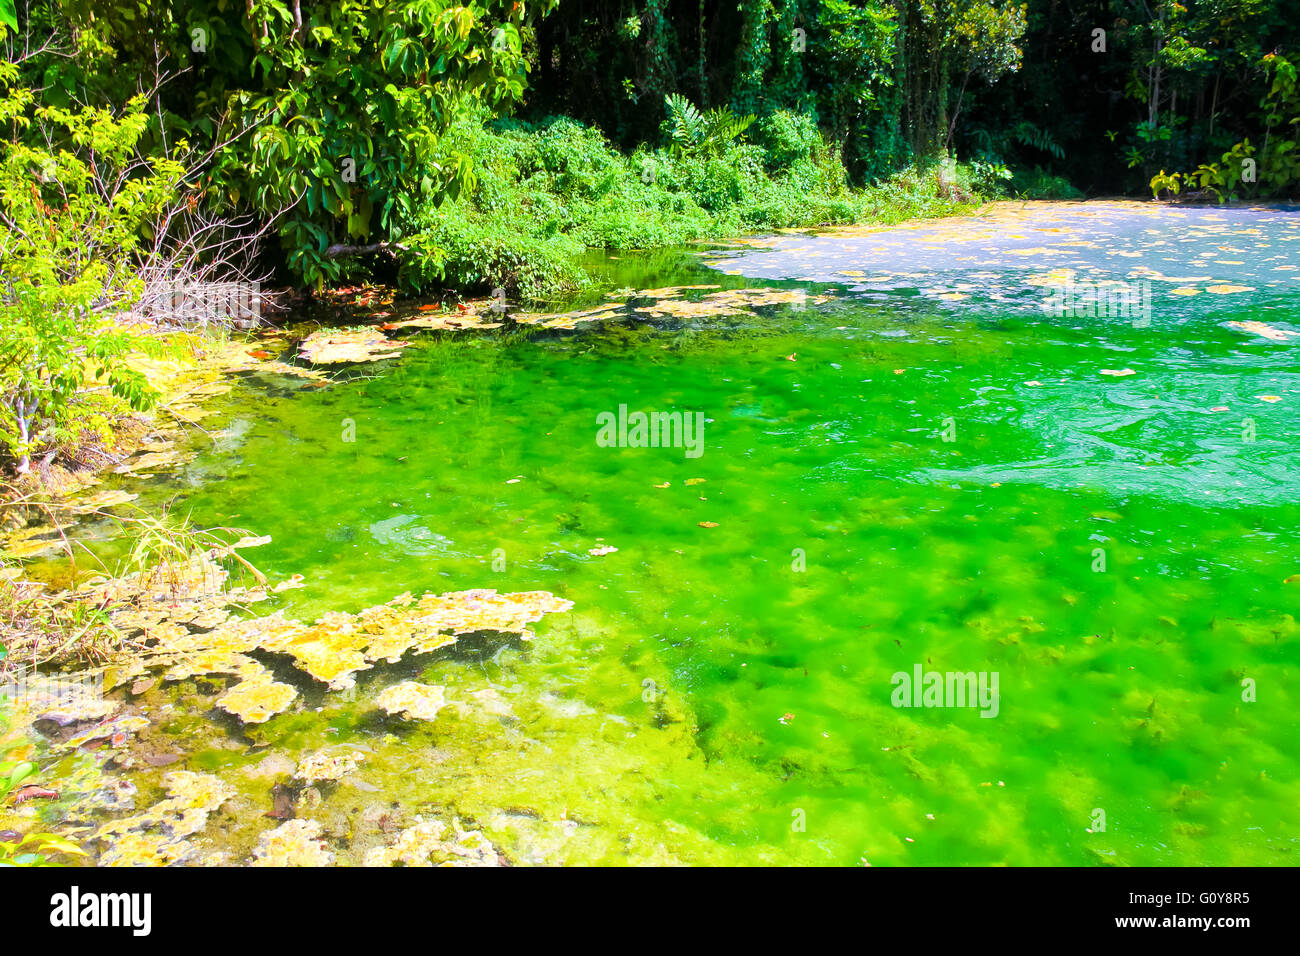 Agua clara y hermosa fuente de agua en bosque en Emerald Pool (Sra Morakot) alimentado por agua de manantial y piscina de agua dulce en Krabi, Tailandia. Foto de stock